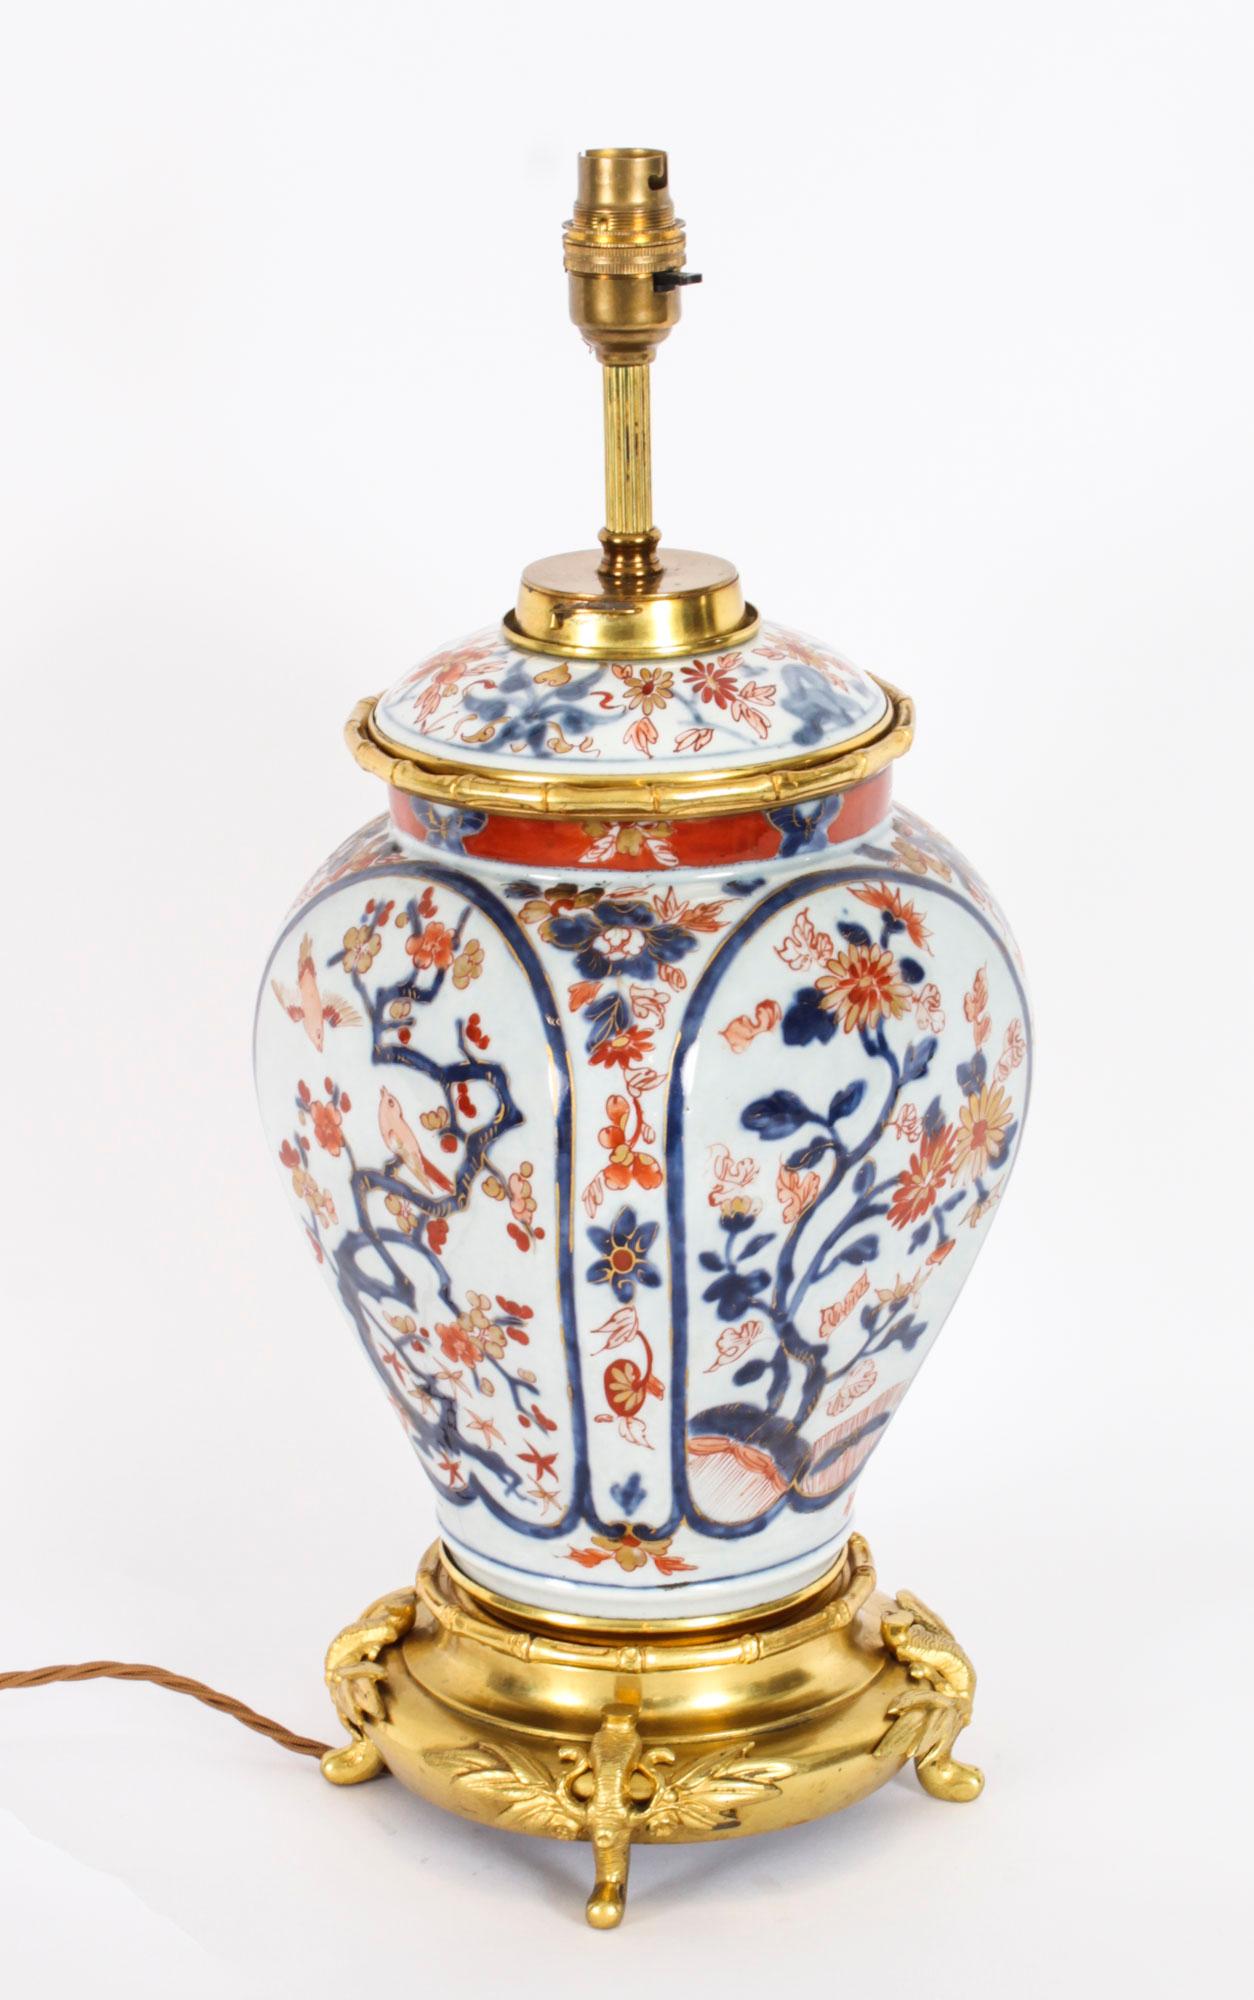 Dies ist eine hervorragende dekorative japanische Imari-Tischlampe auf einem Ständer aus der Zeit um 1840.
 
Die Lampe hat eine bauchige Form und zeigt japanische Dekoration in den traditionellen Imari-Farben Blau, Orange und Rot, die reichlich mit